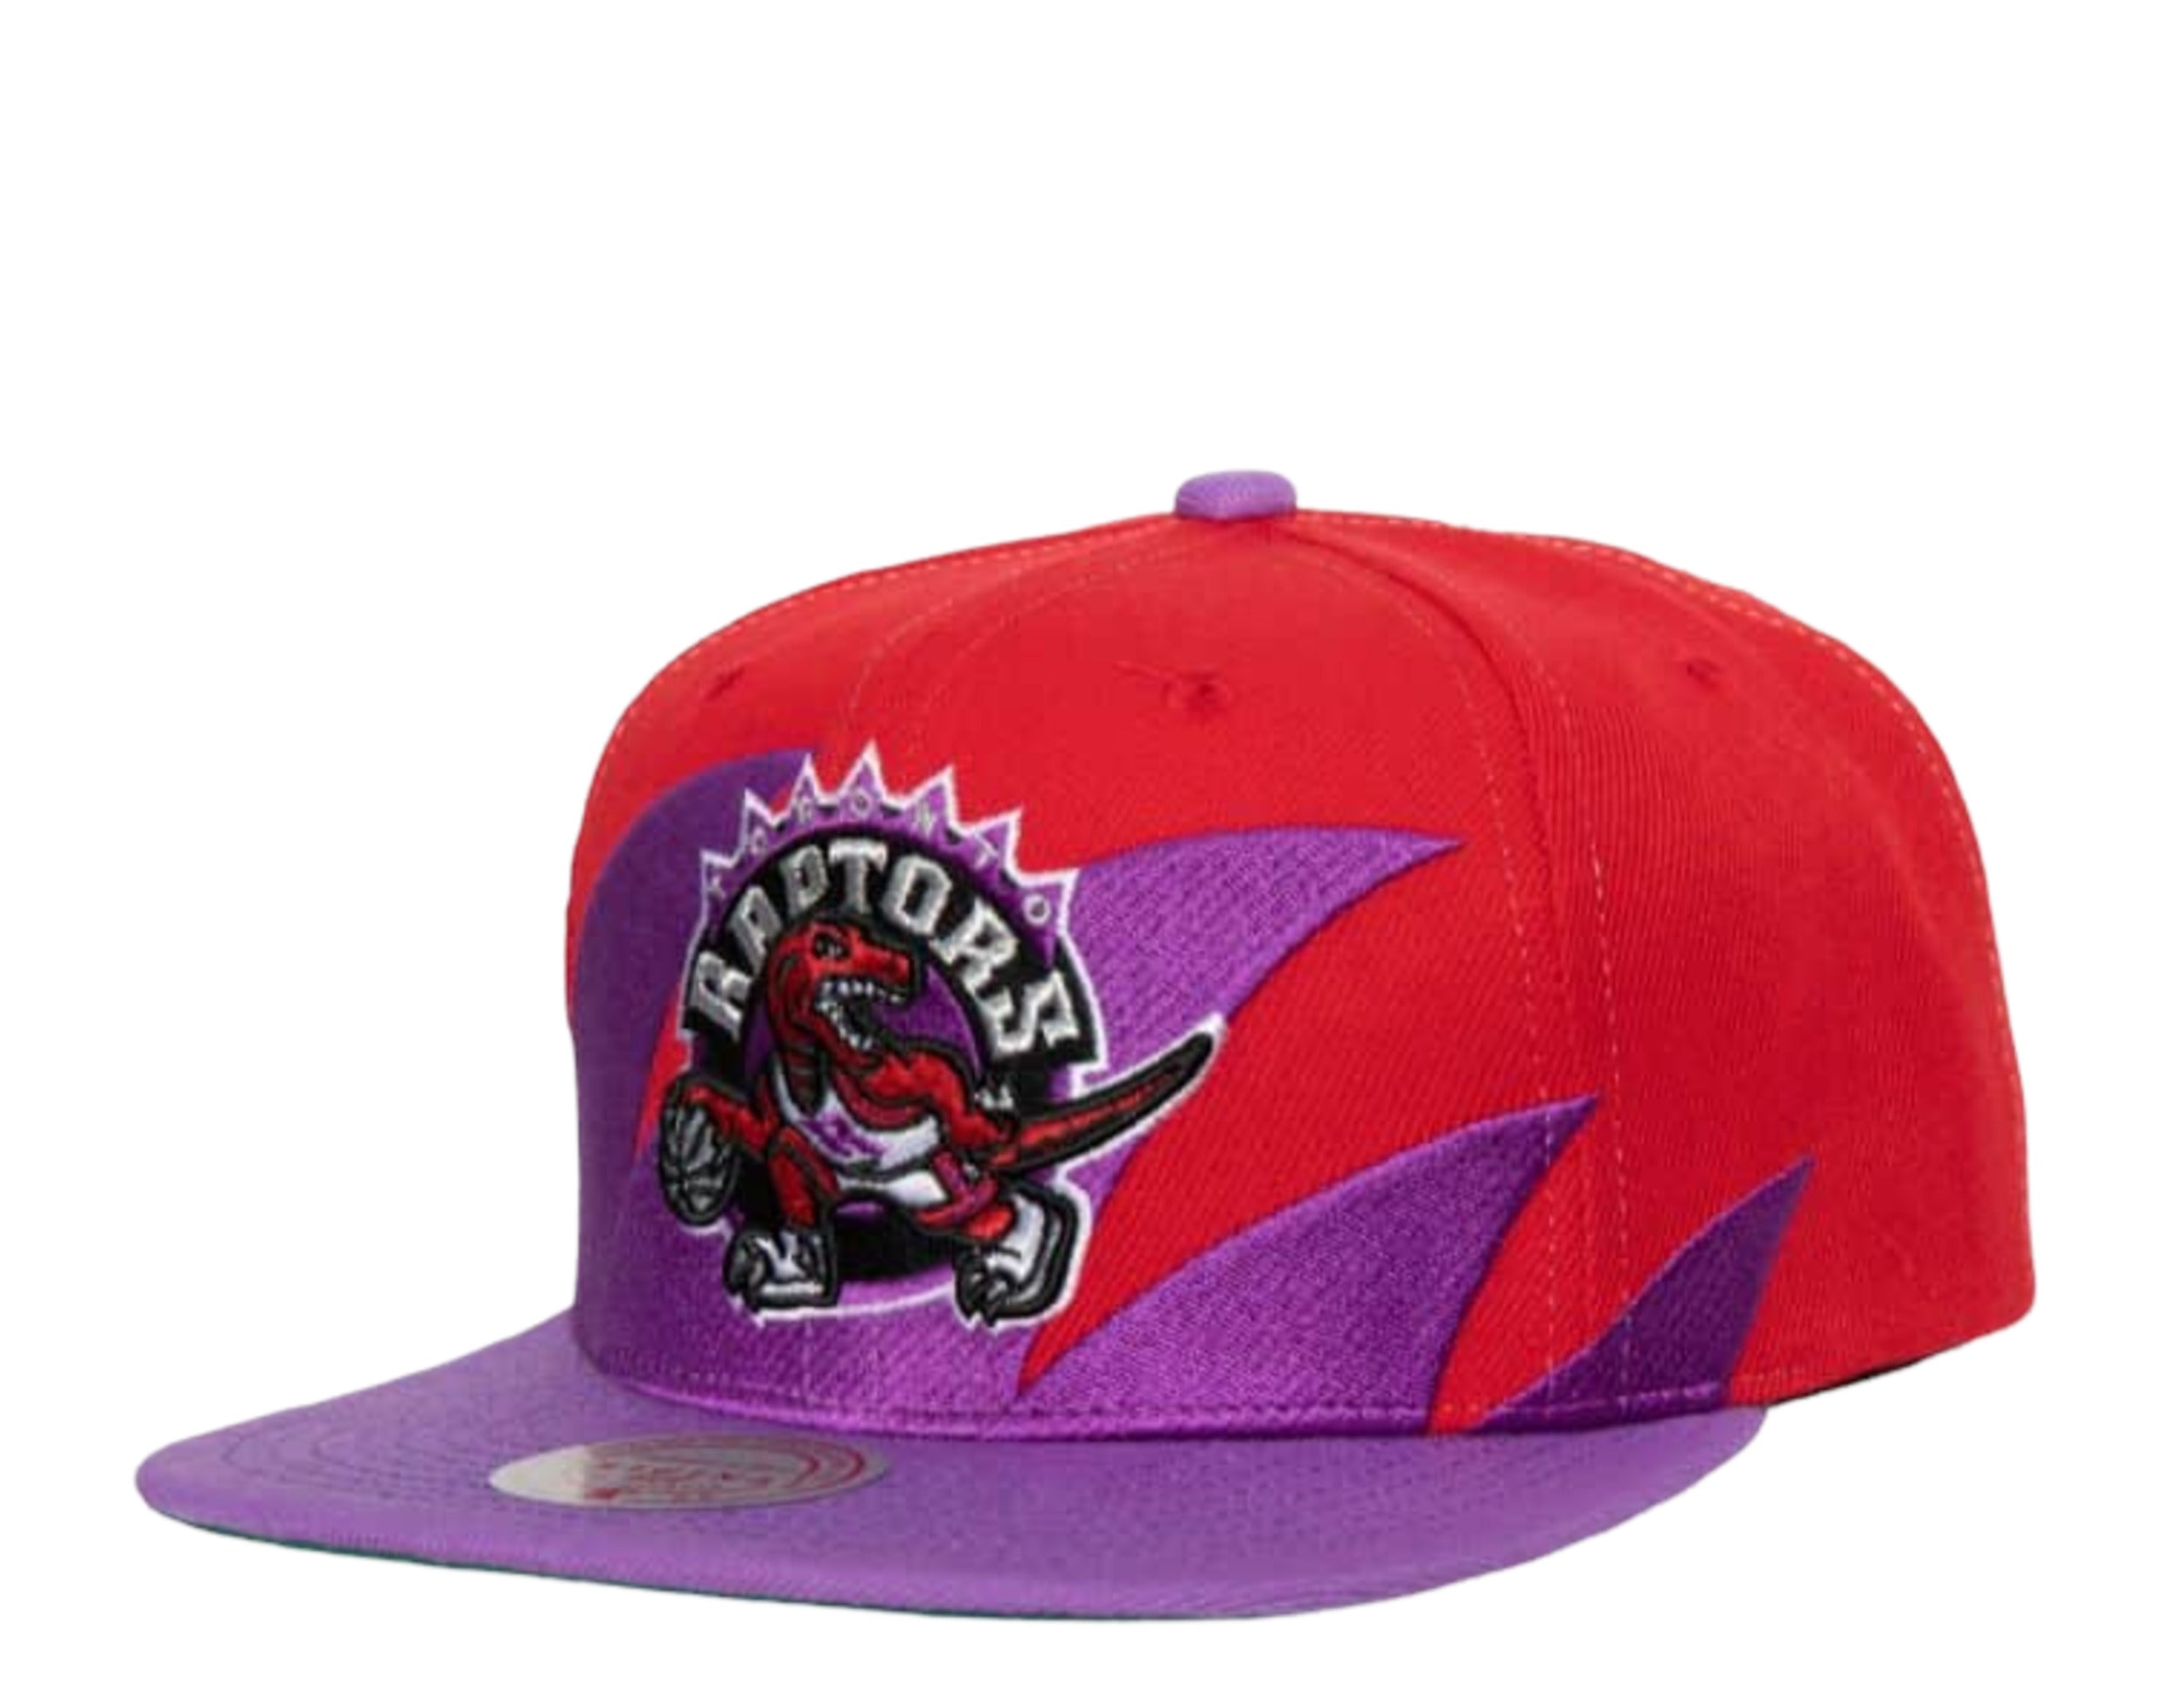 toronto baseball hats